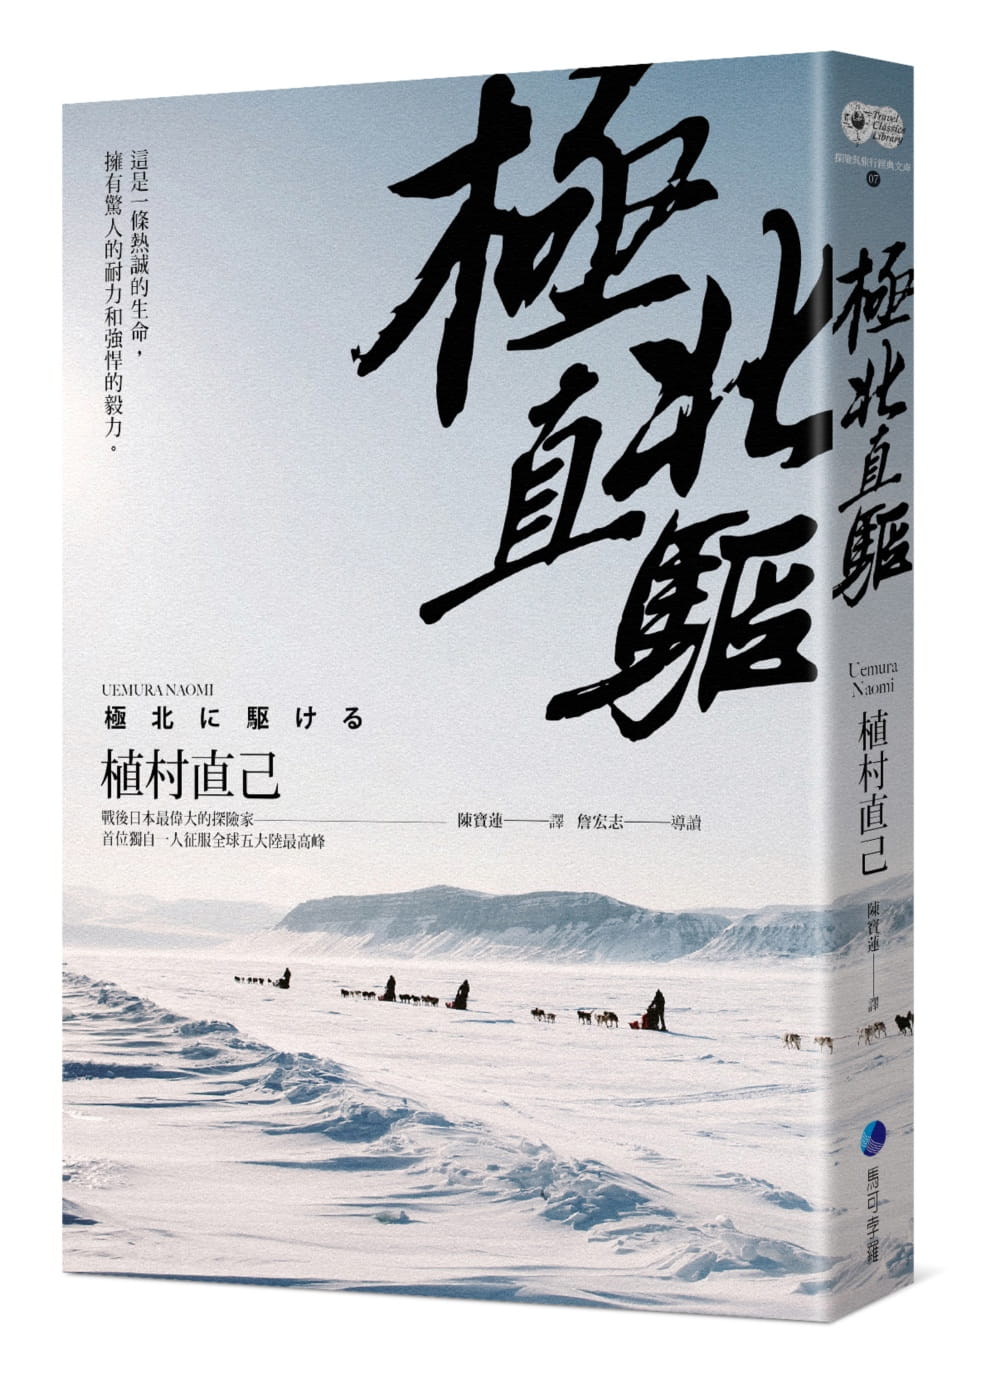 極北直驅(平裝本經典回歸)：日本最偉大探險家植村直己極地探險經典作